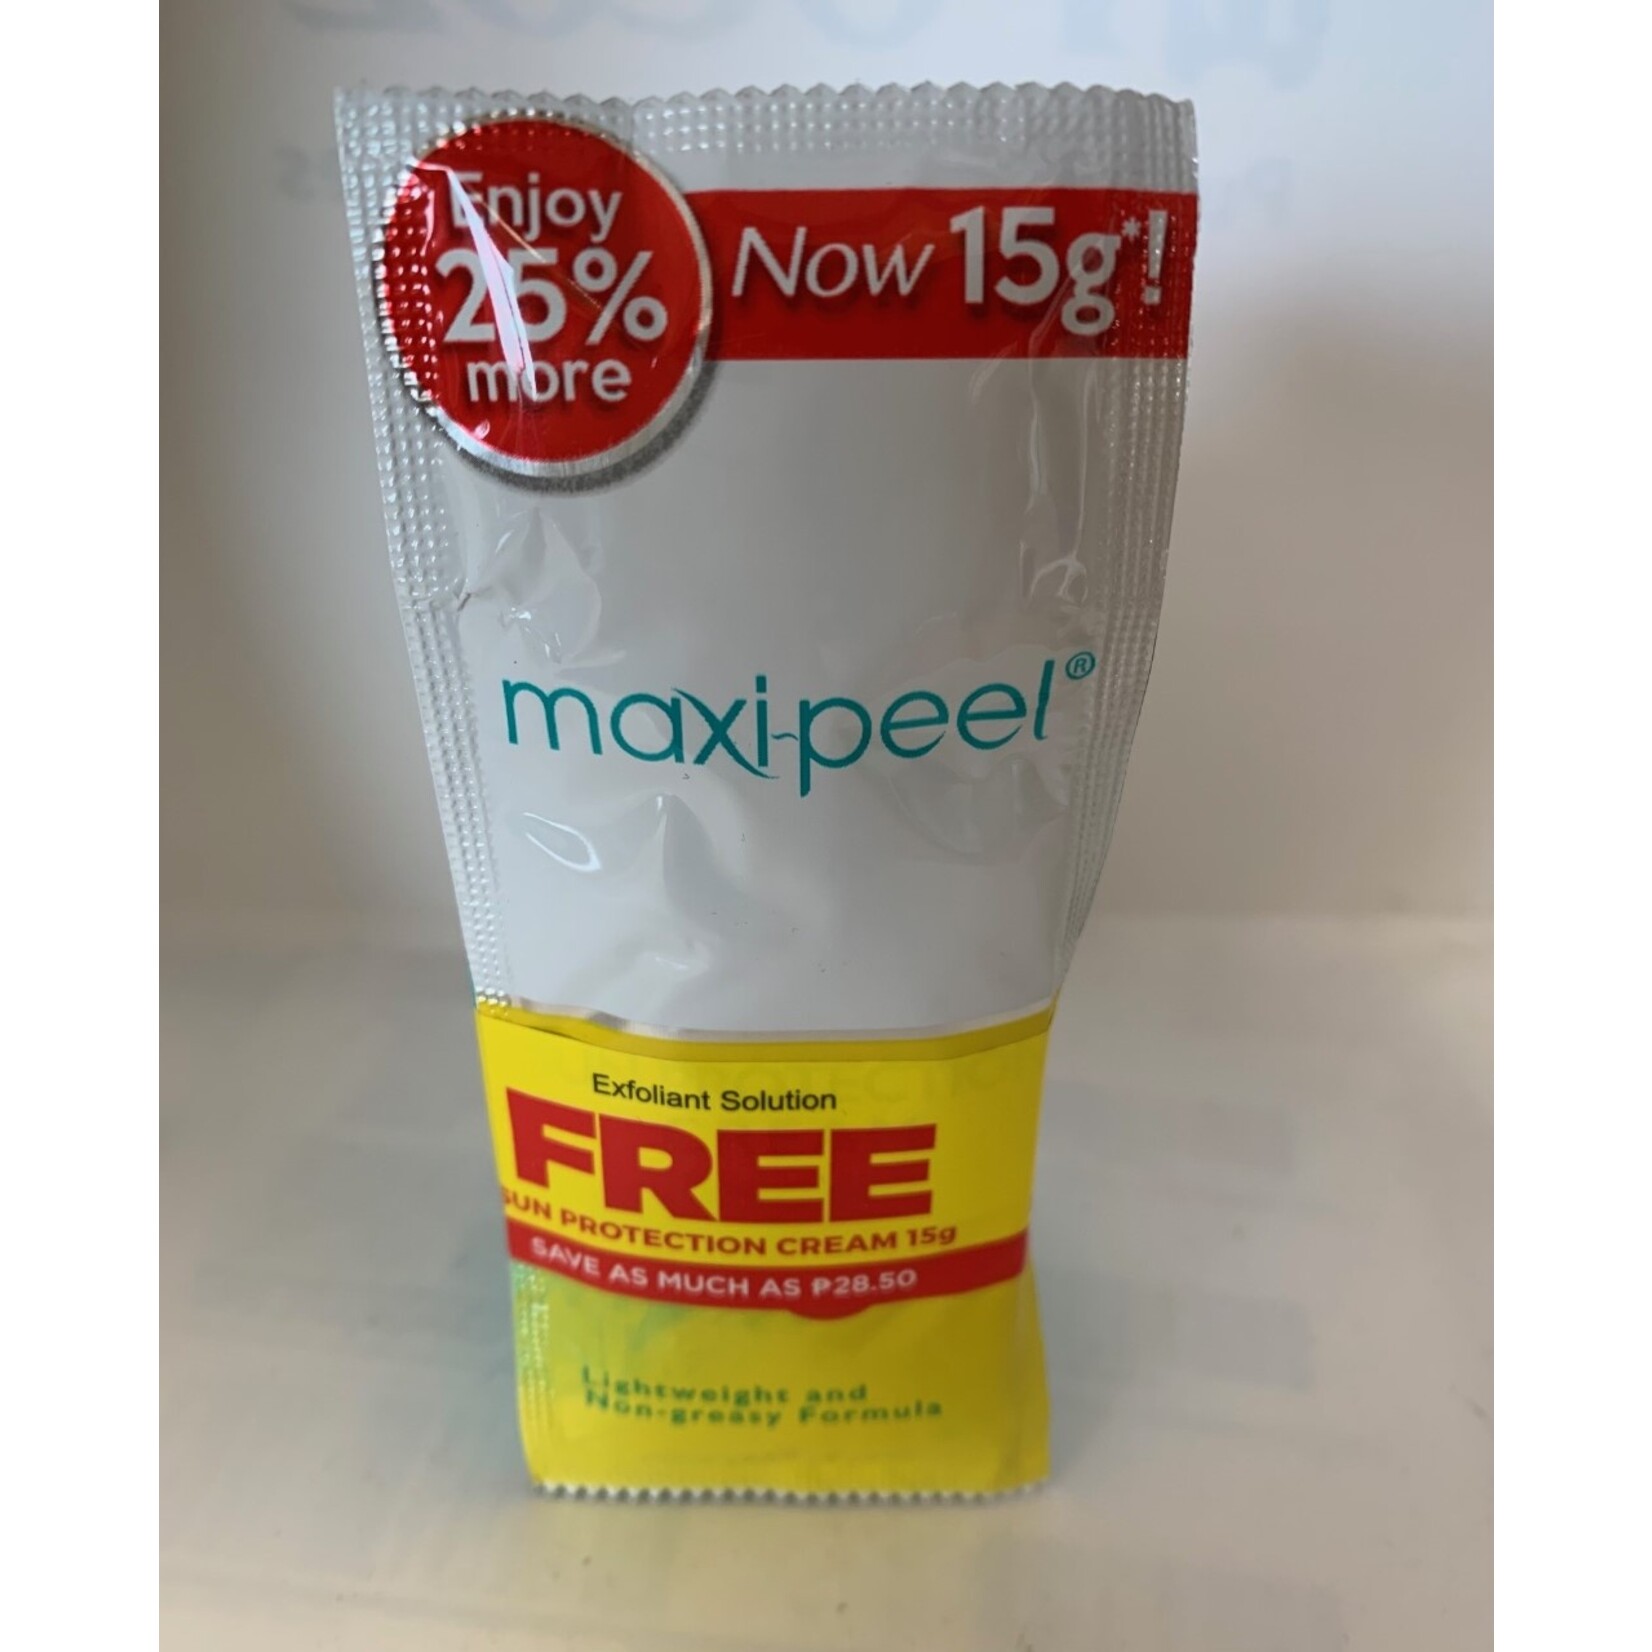 Maxi-Peel, biedt een passend product voor al jouw huidbehoeften! Maxi-Peel Tretinoin hydroquinone exfoliant solution no. 2